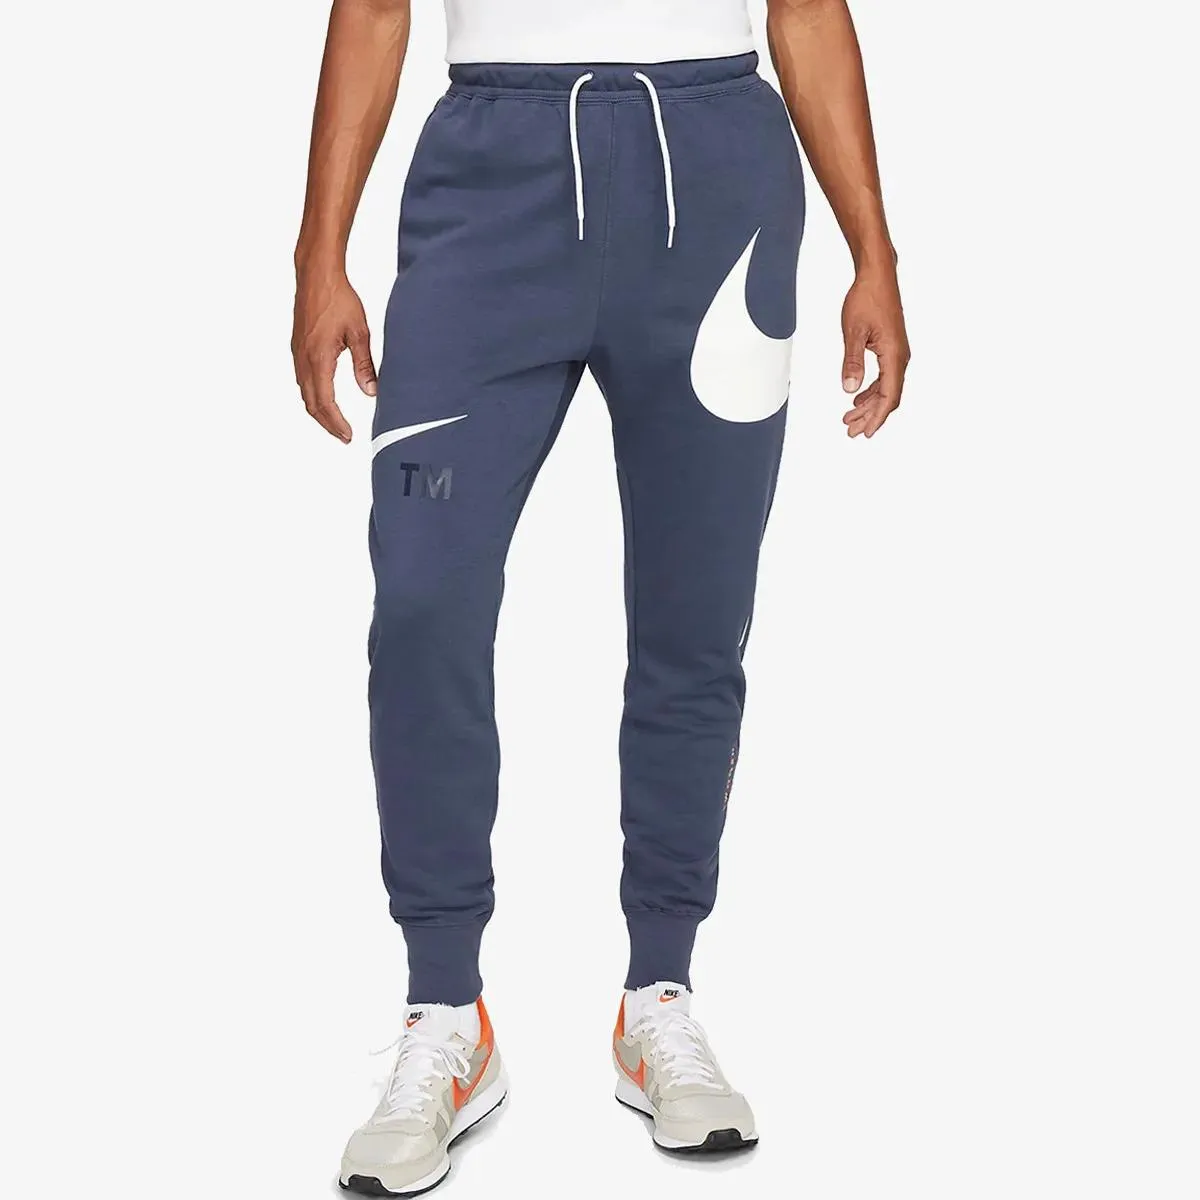 Nike Sportswear Swoosh 